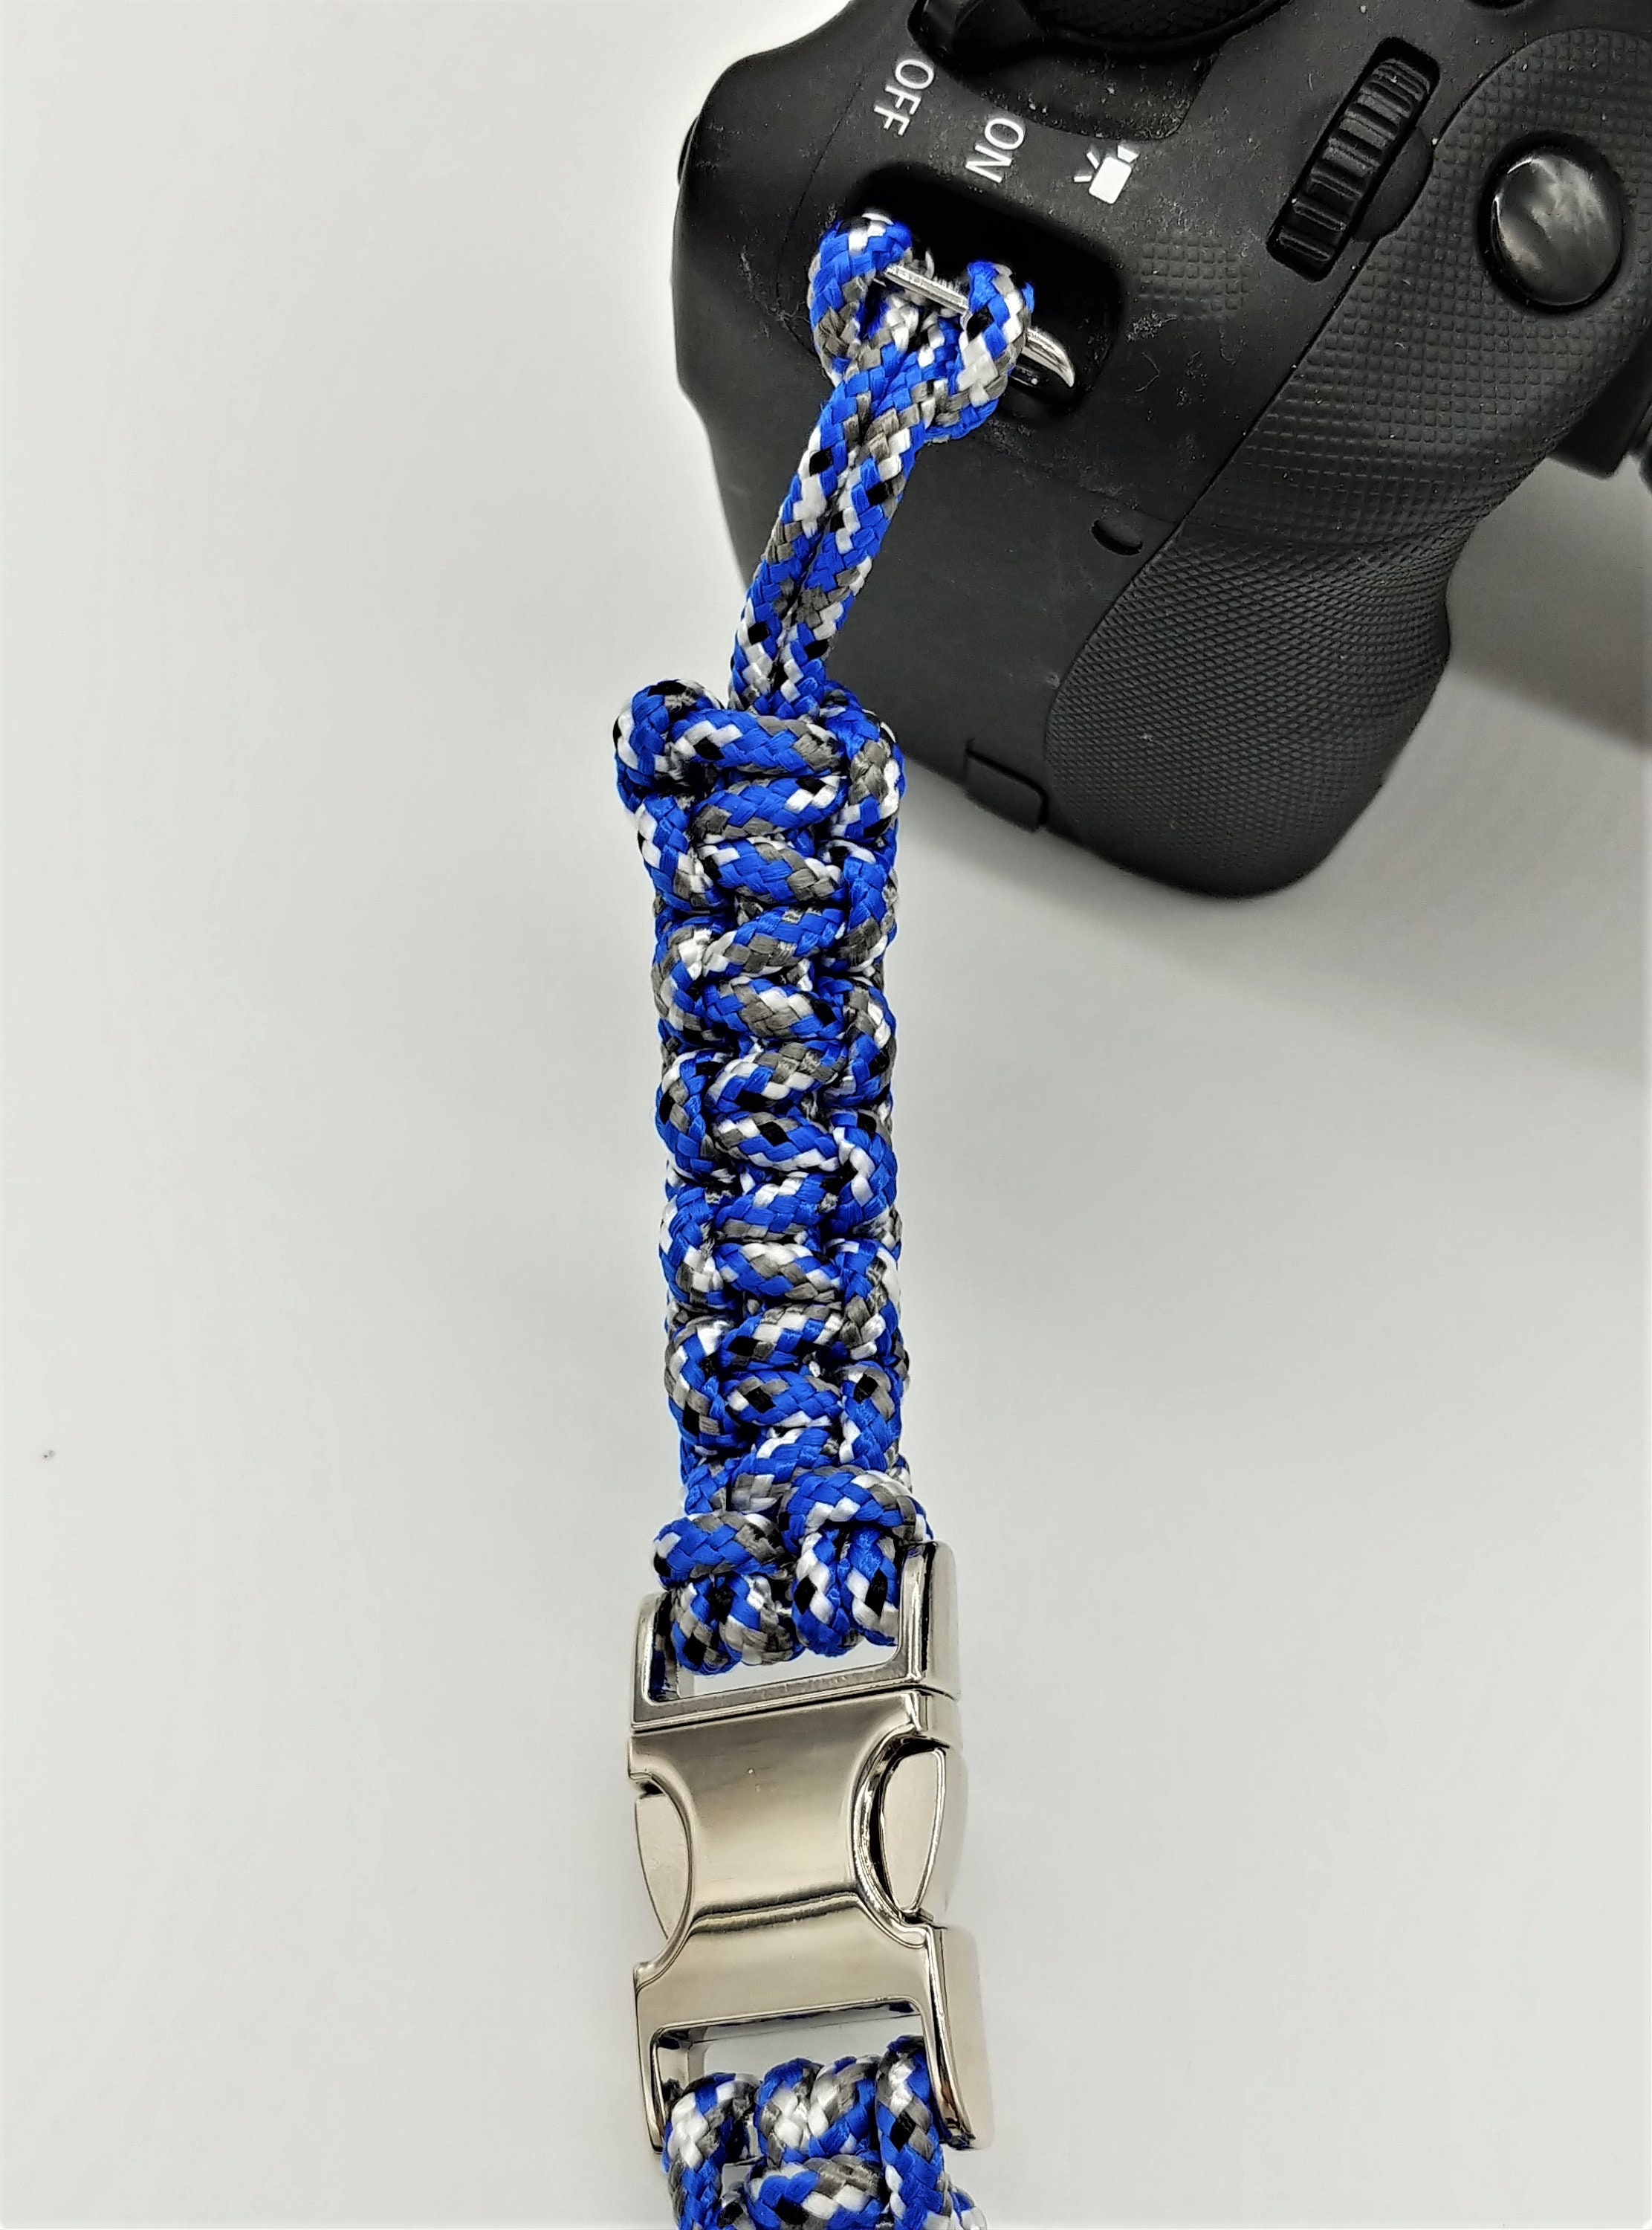 Kamera-Handschlaufe / Kameragurt / Kameraschlaufe geknotet aus Parachute Cord (Fallschirmschnur) mit Klick-Schnellverschluß / Farbe Blau